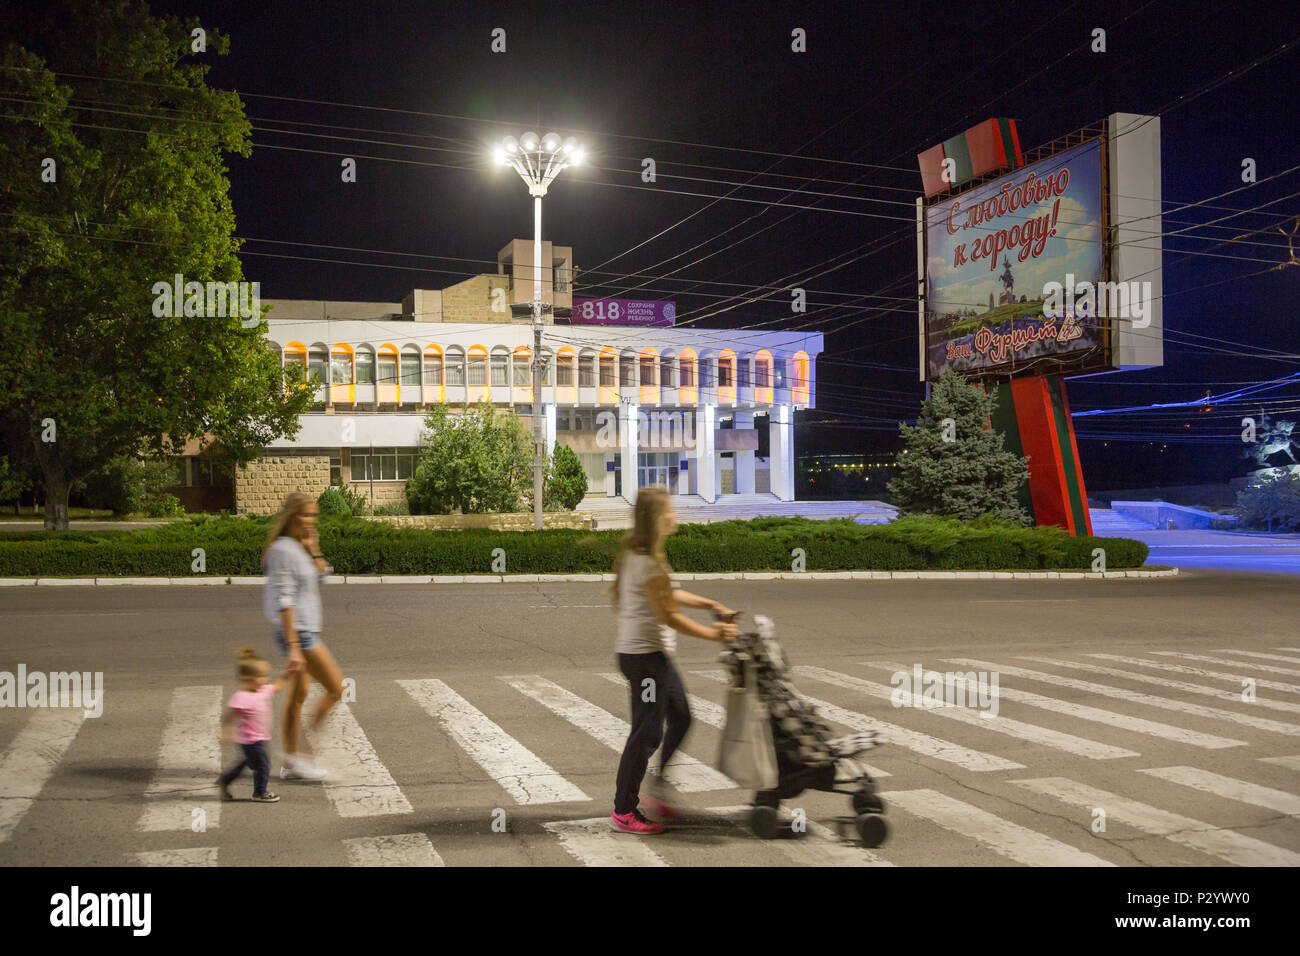 25.08.2016, Tiraspol, Transnistria Moldavia - i passanti, illuminato dalla propaganda politica e ex Pioneer Palace (ora: Palazzo dei bambini e Foto Stock